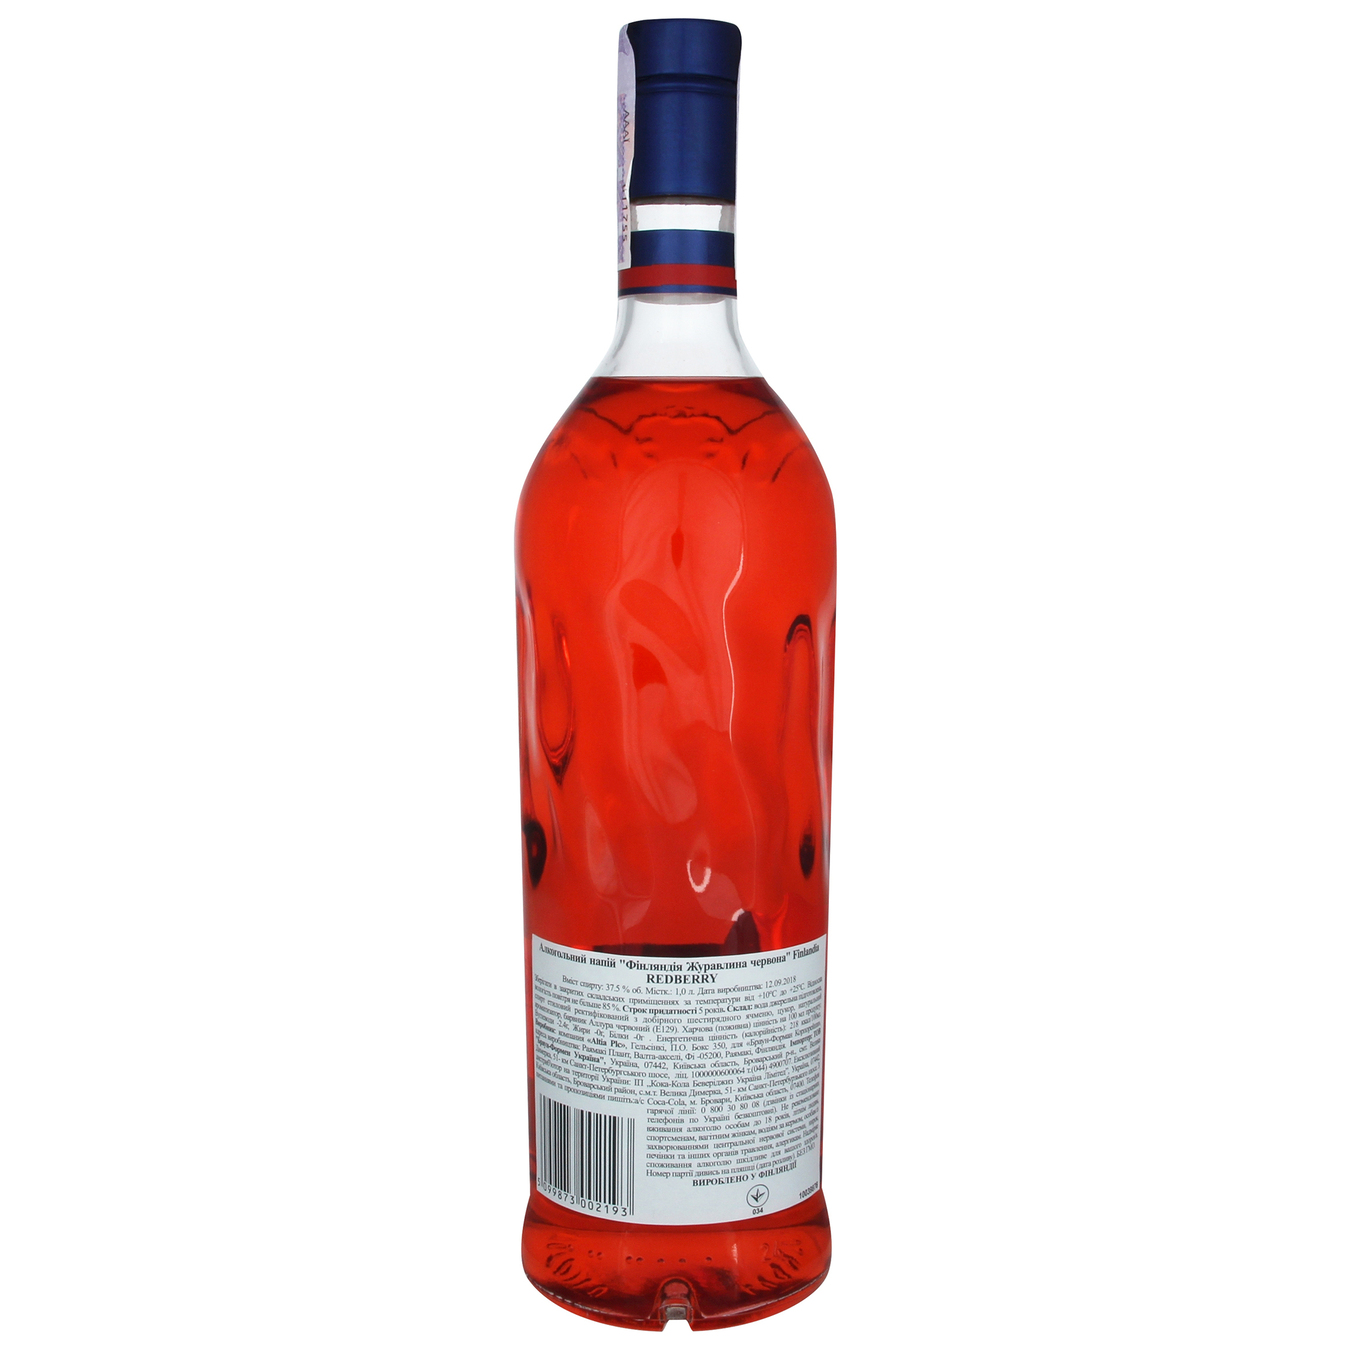 Finland Redberry Vodka 0,4 1L 2